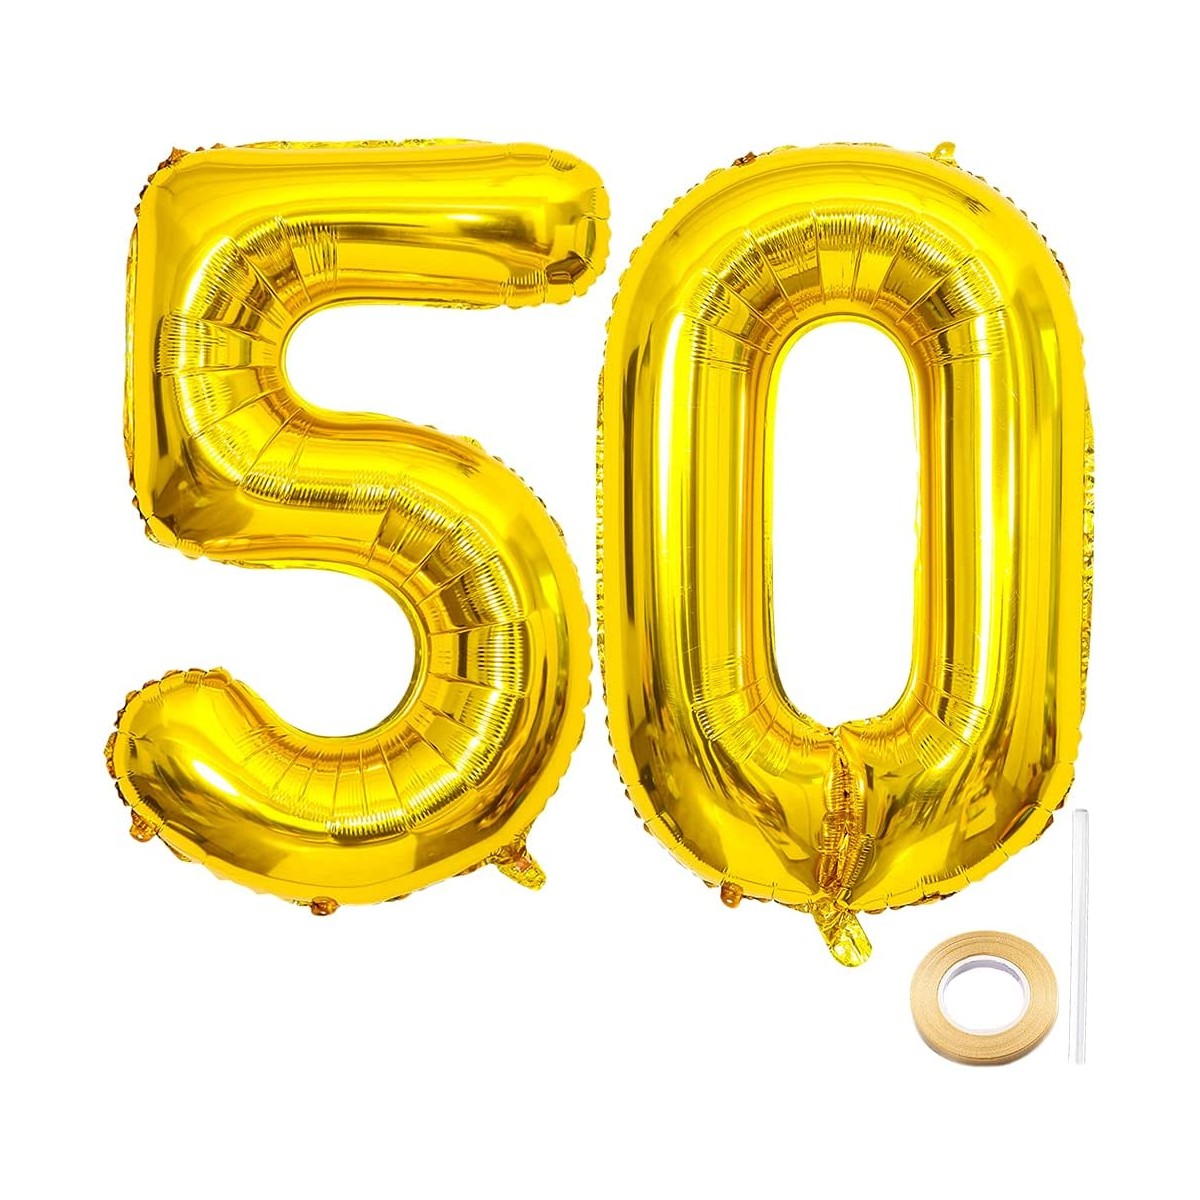 Set da 2 palloncini oro numero 50, per anniversari 50° o compleanno